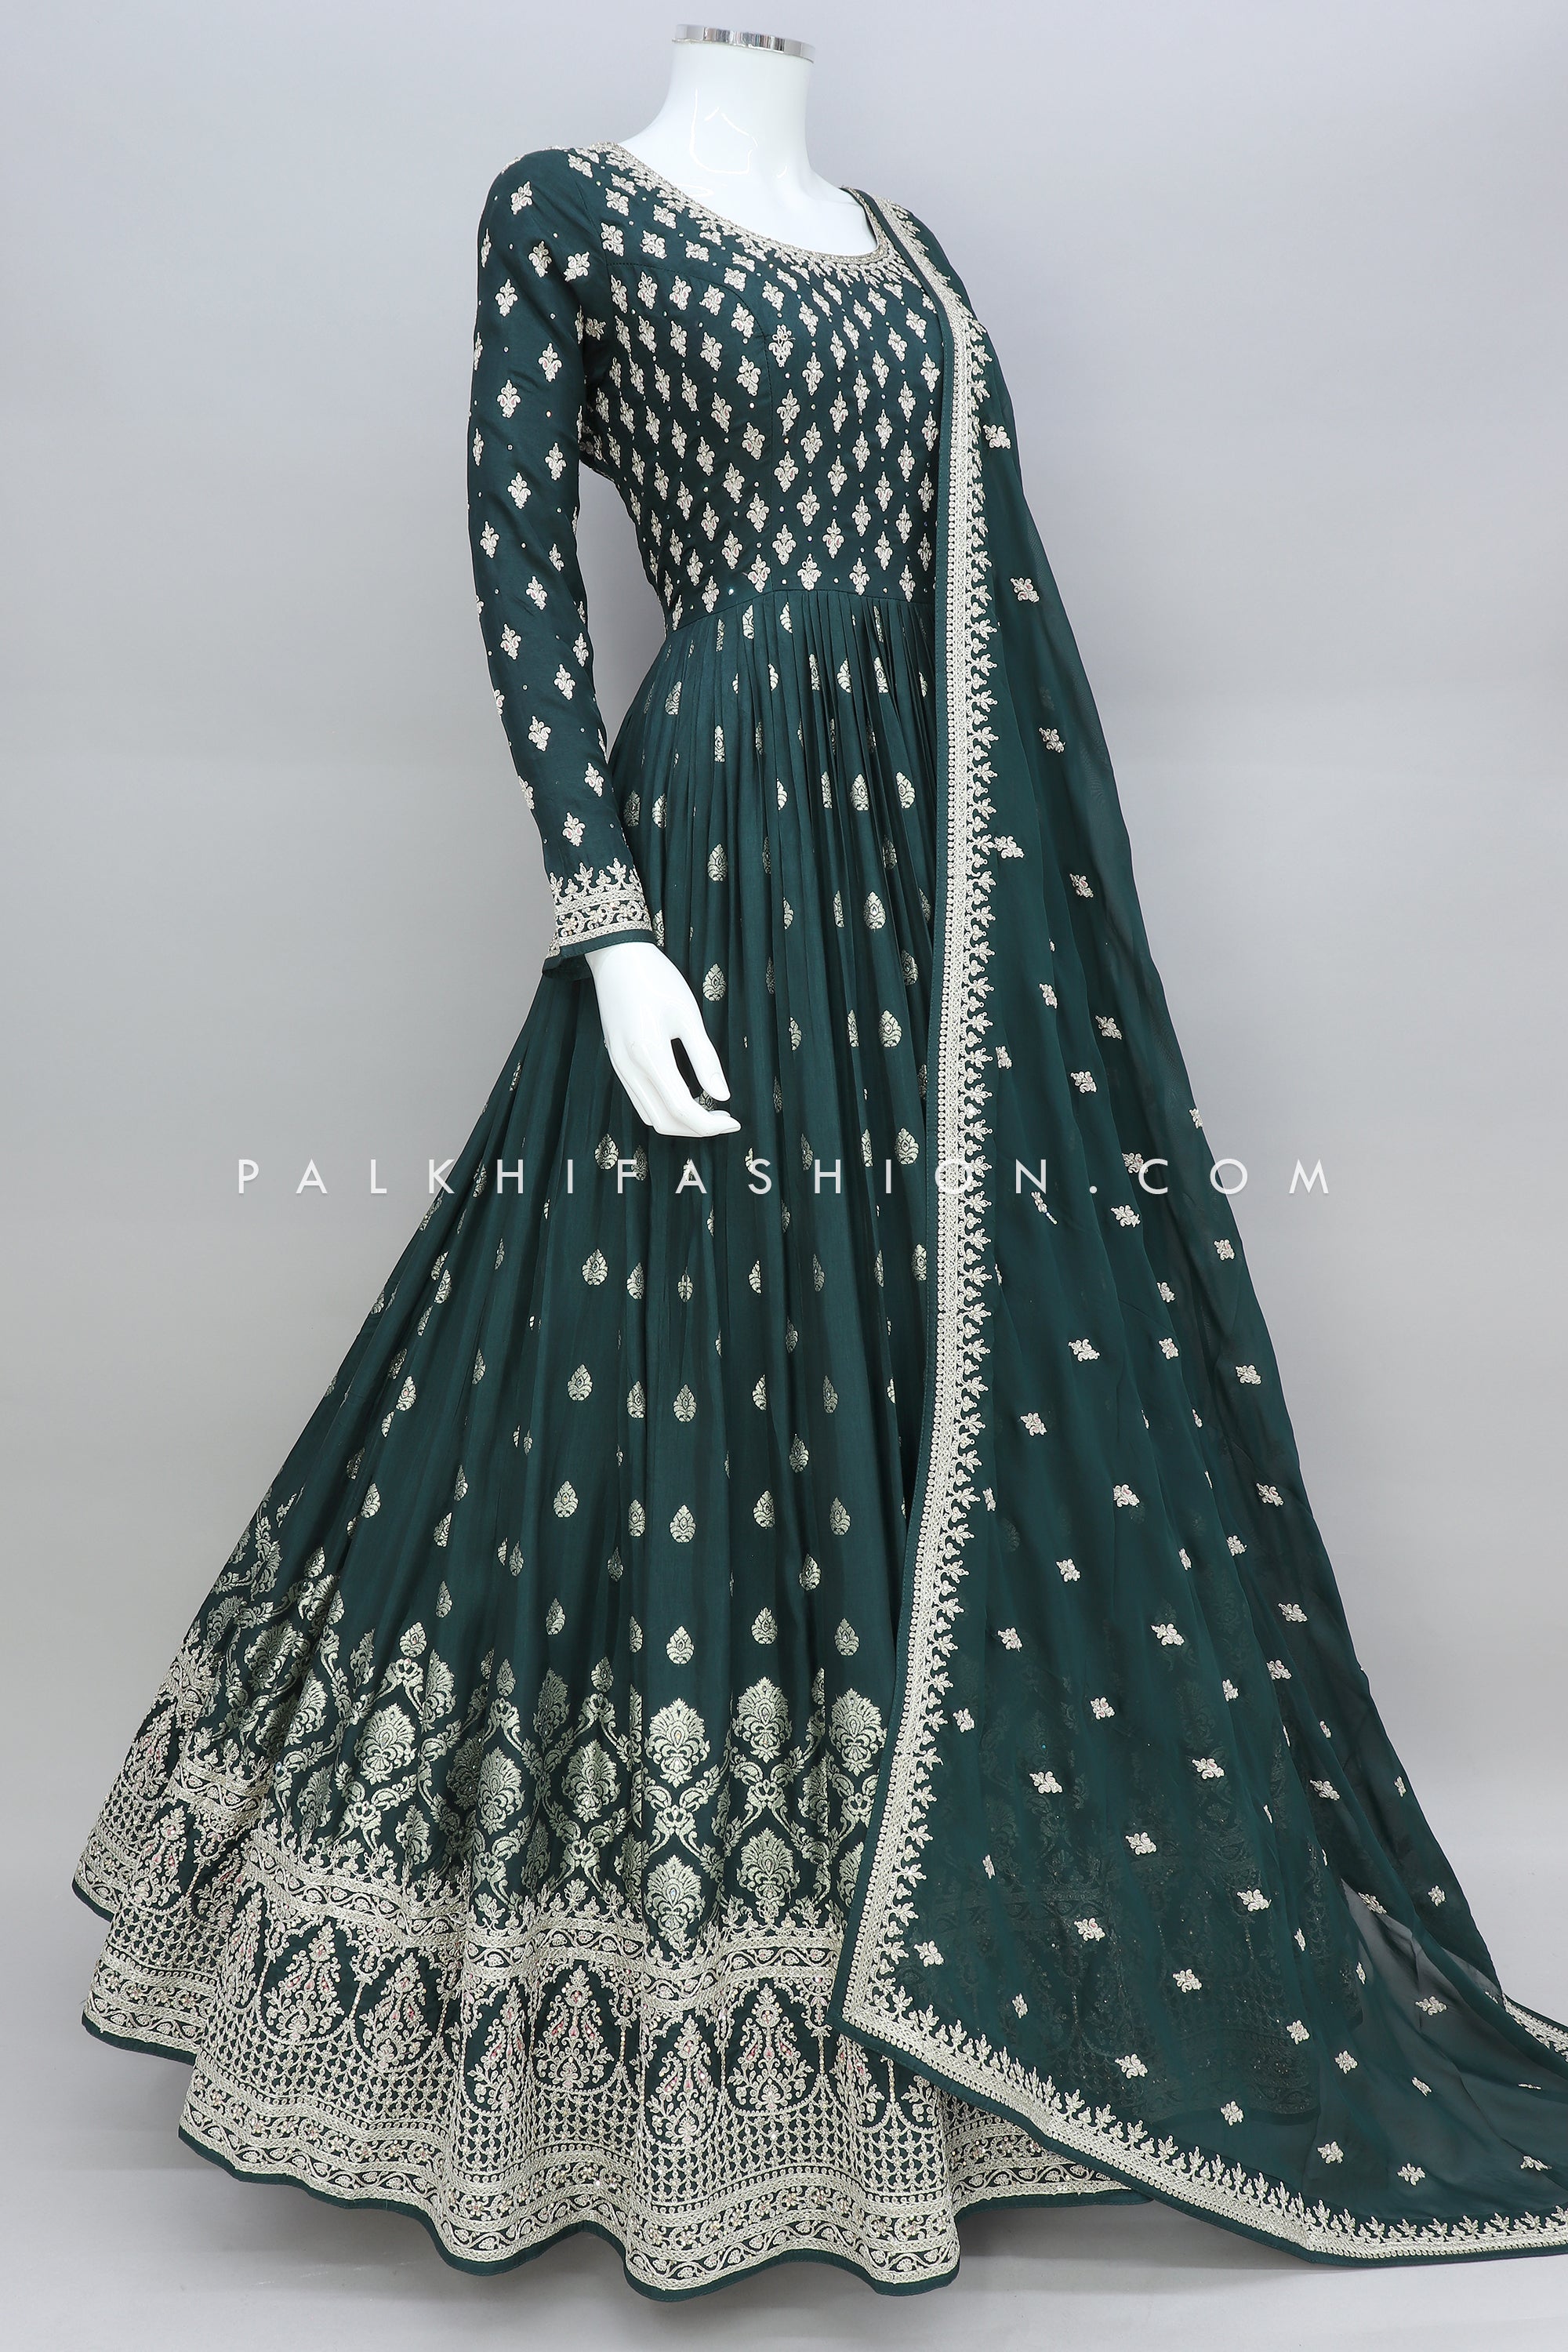 Green Indian & Pakistan Wedding Wear Designer Party Wear Anarkali Women Gown  | eBay